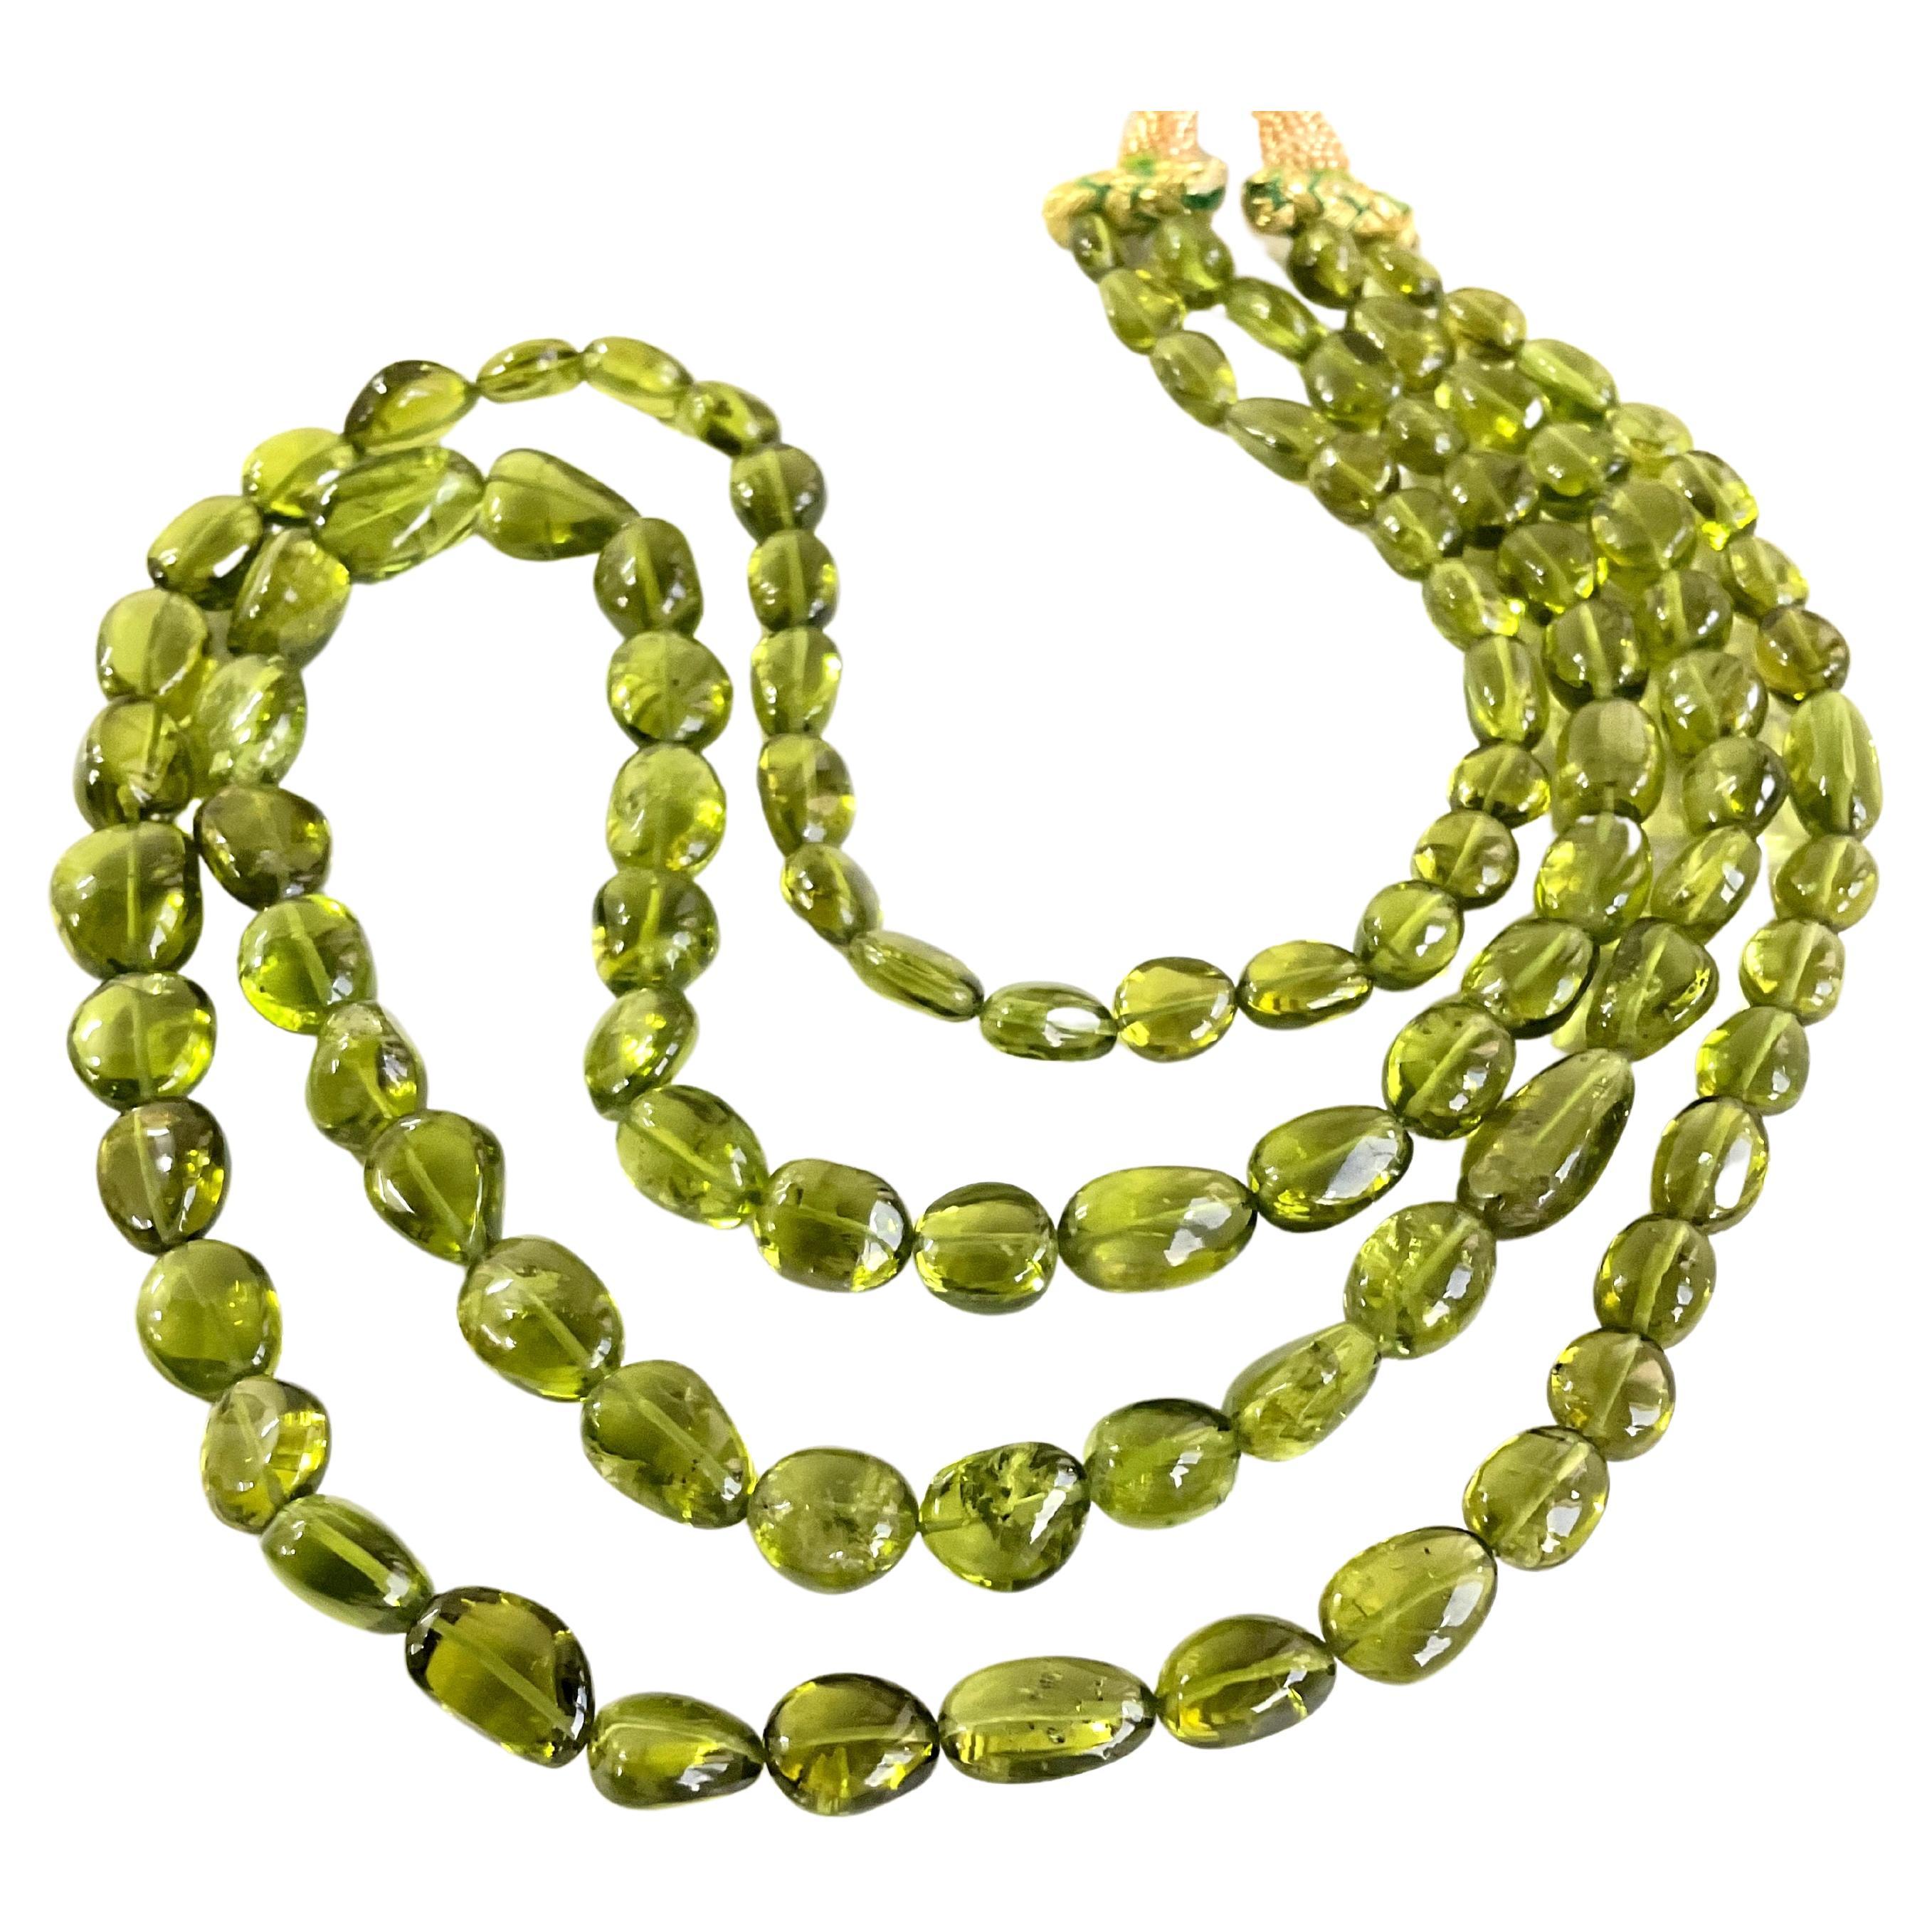 Top Qualität Peridot Plain getrommelt natürlichen Edelstein Halskette 
Größe: 6x7 bis 13x10 Perlen
Gewicht : 387.70 Karat
Strang - 2 Zeilen